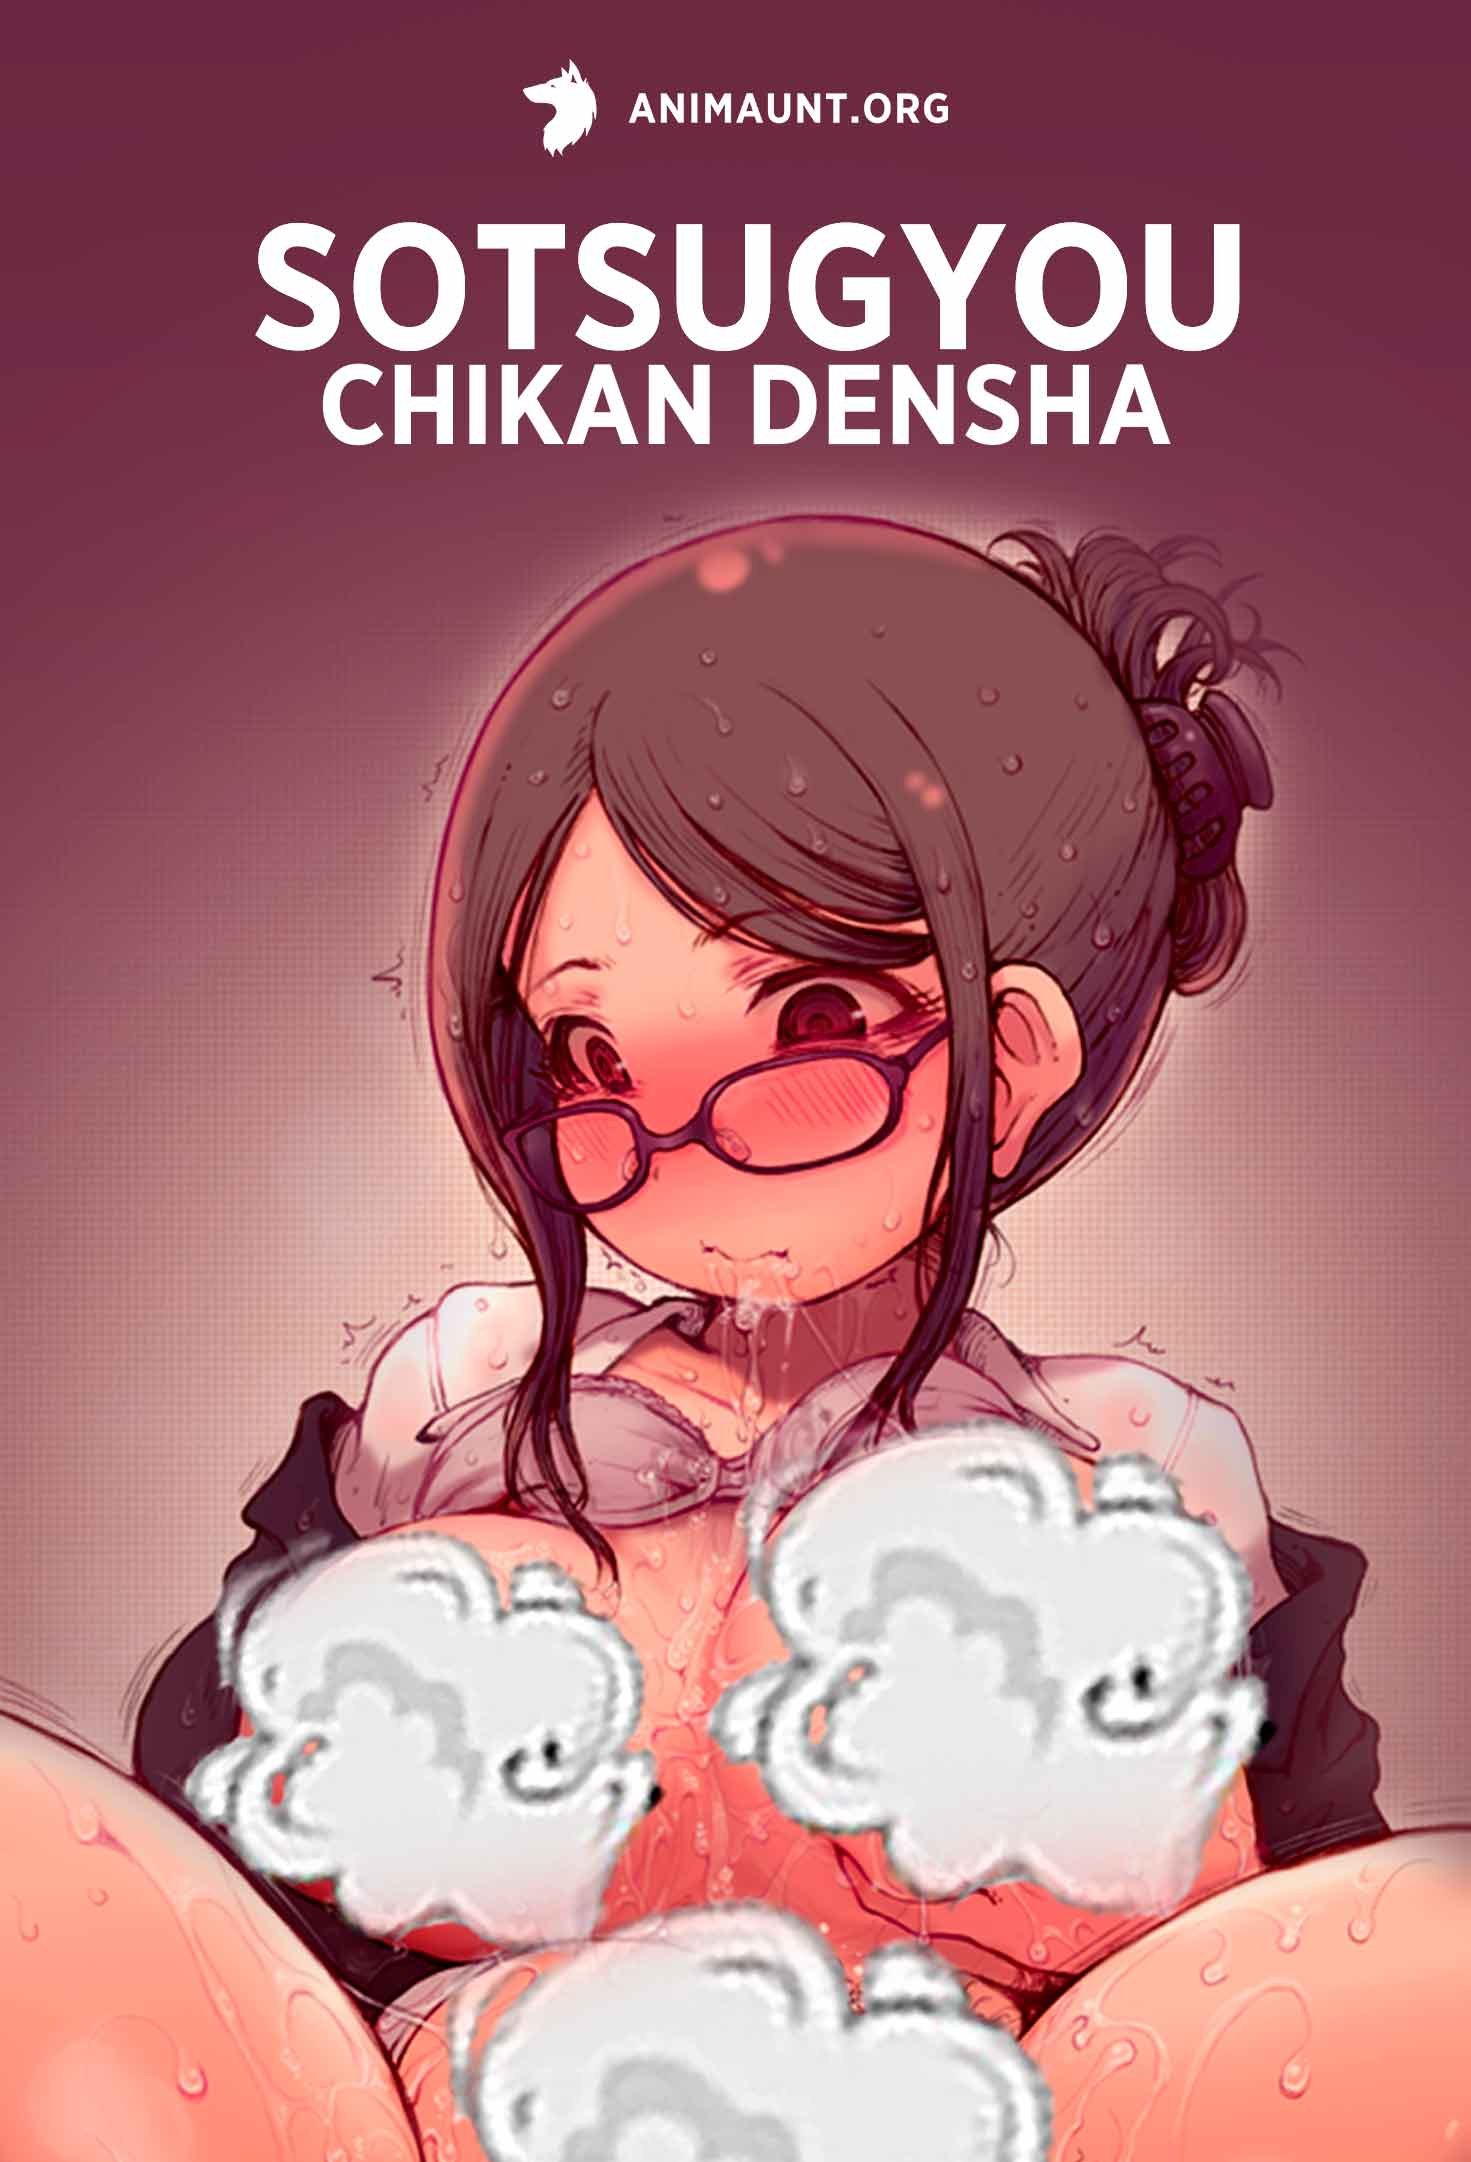 Sotsugyou Chikan Densha 18+